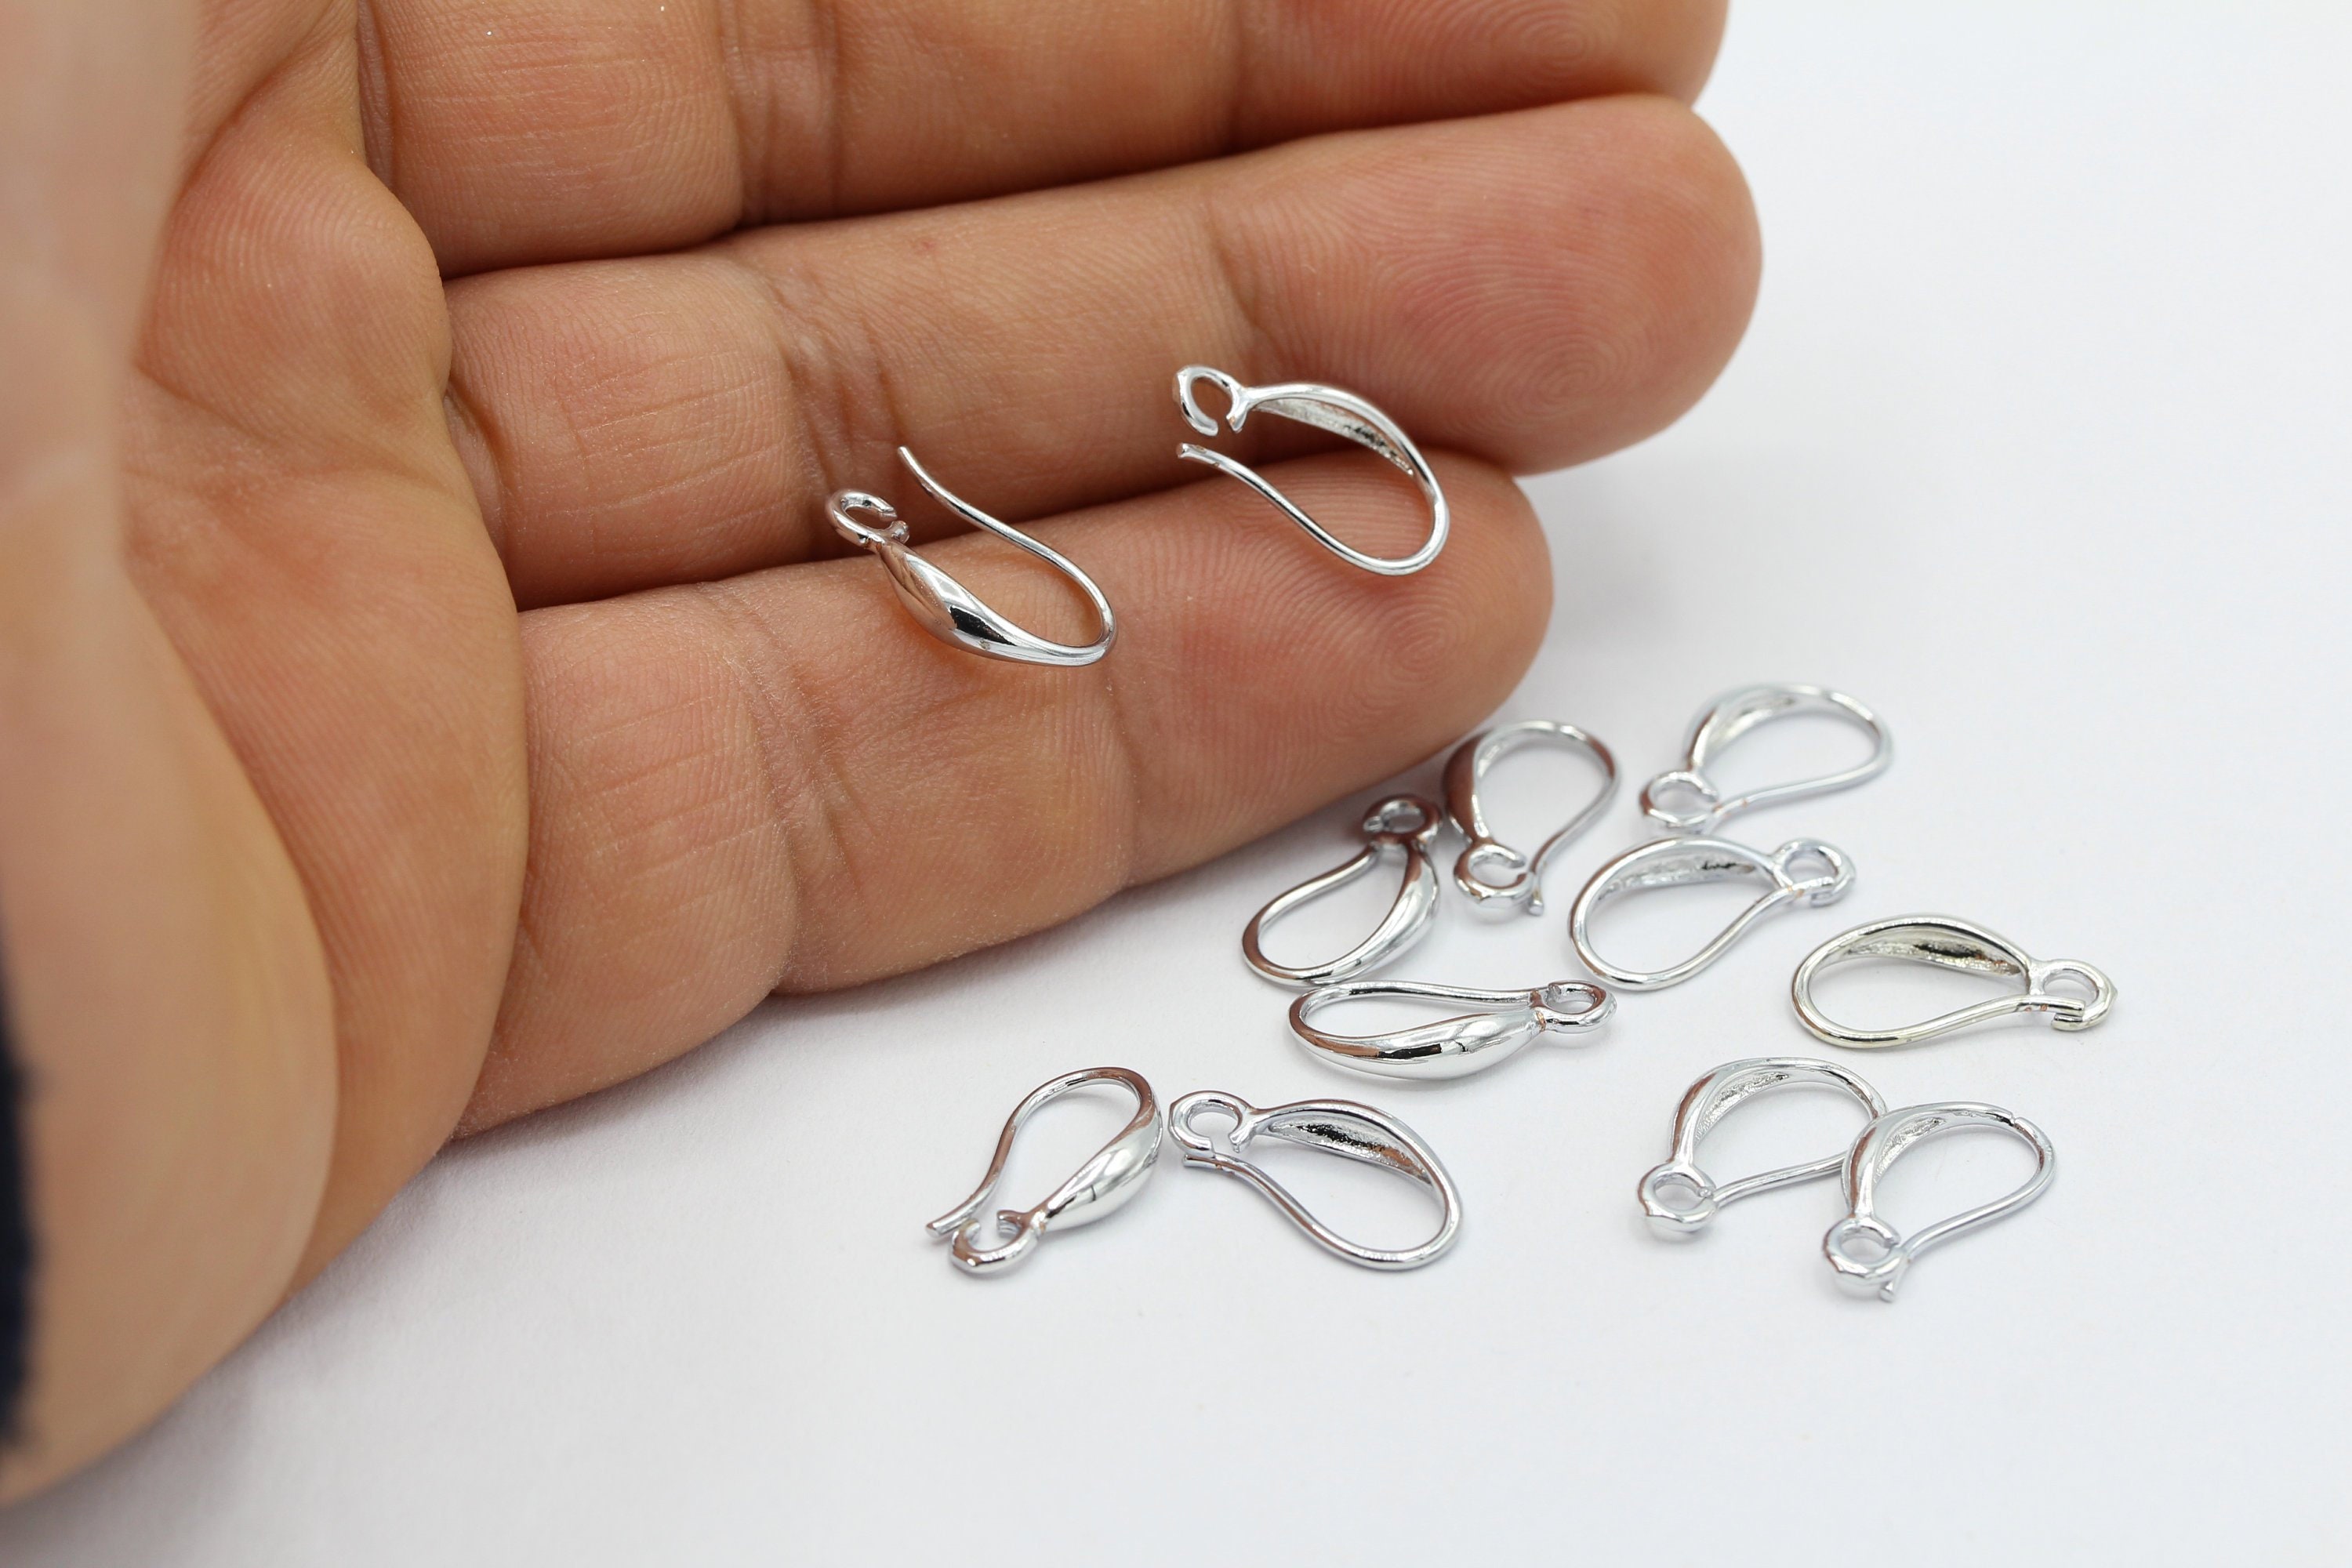 100Pcs Ear Wire Earring Oval Fish Shape Hoop French Hook 35X15mm Jewelry  Making